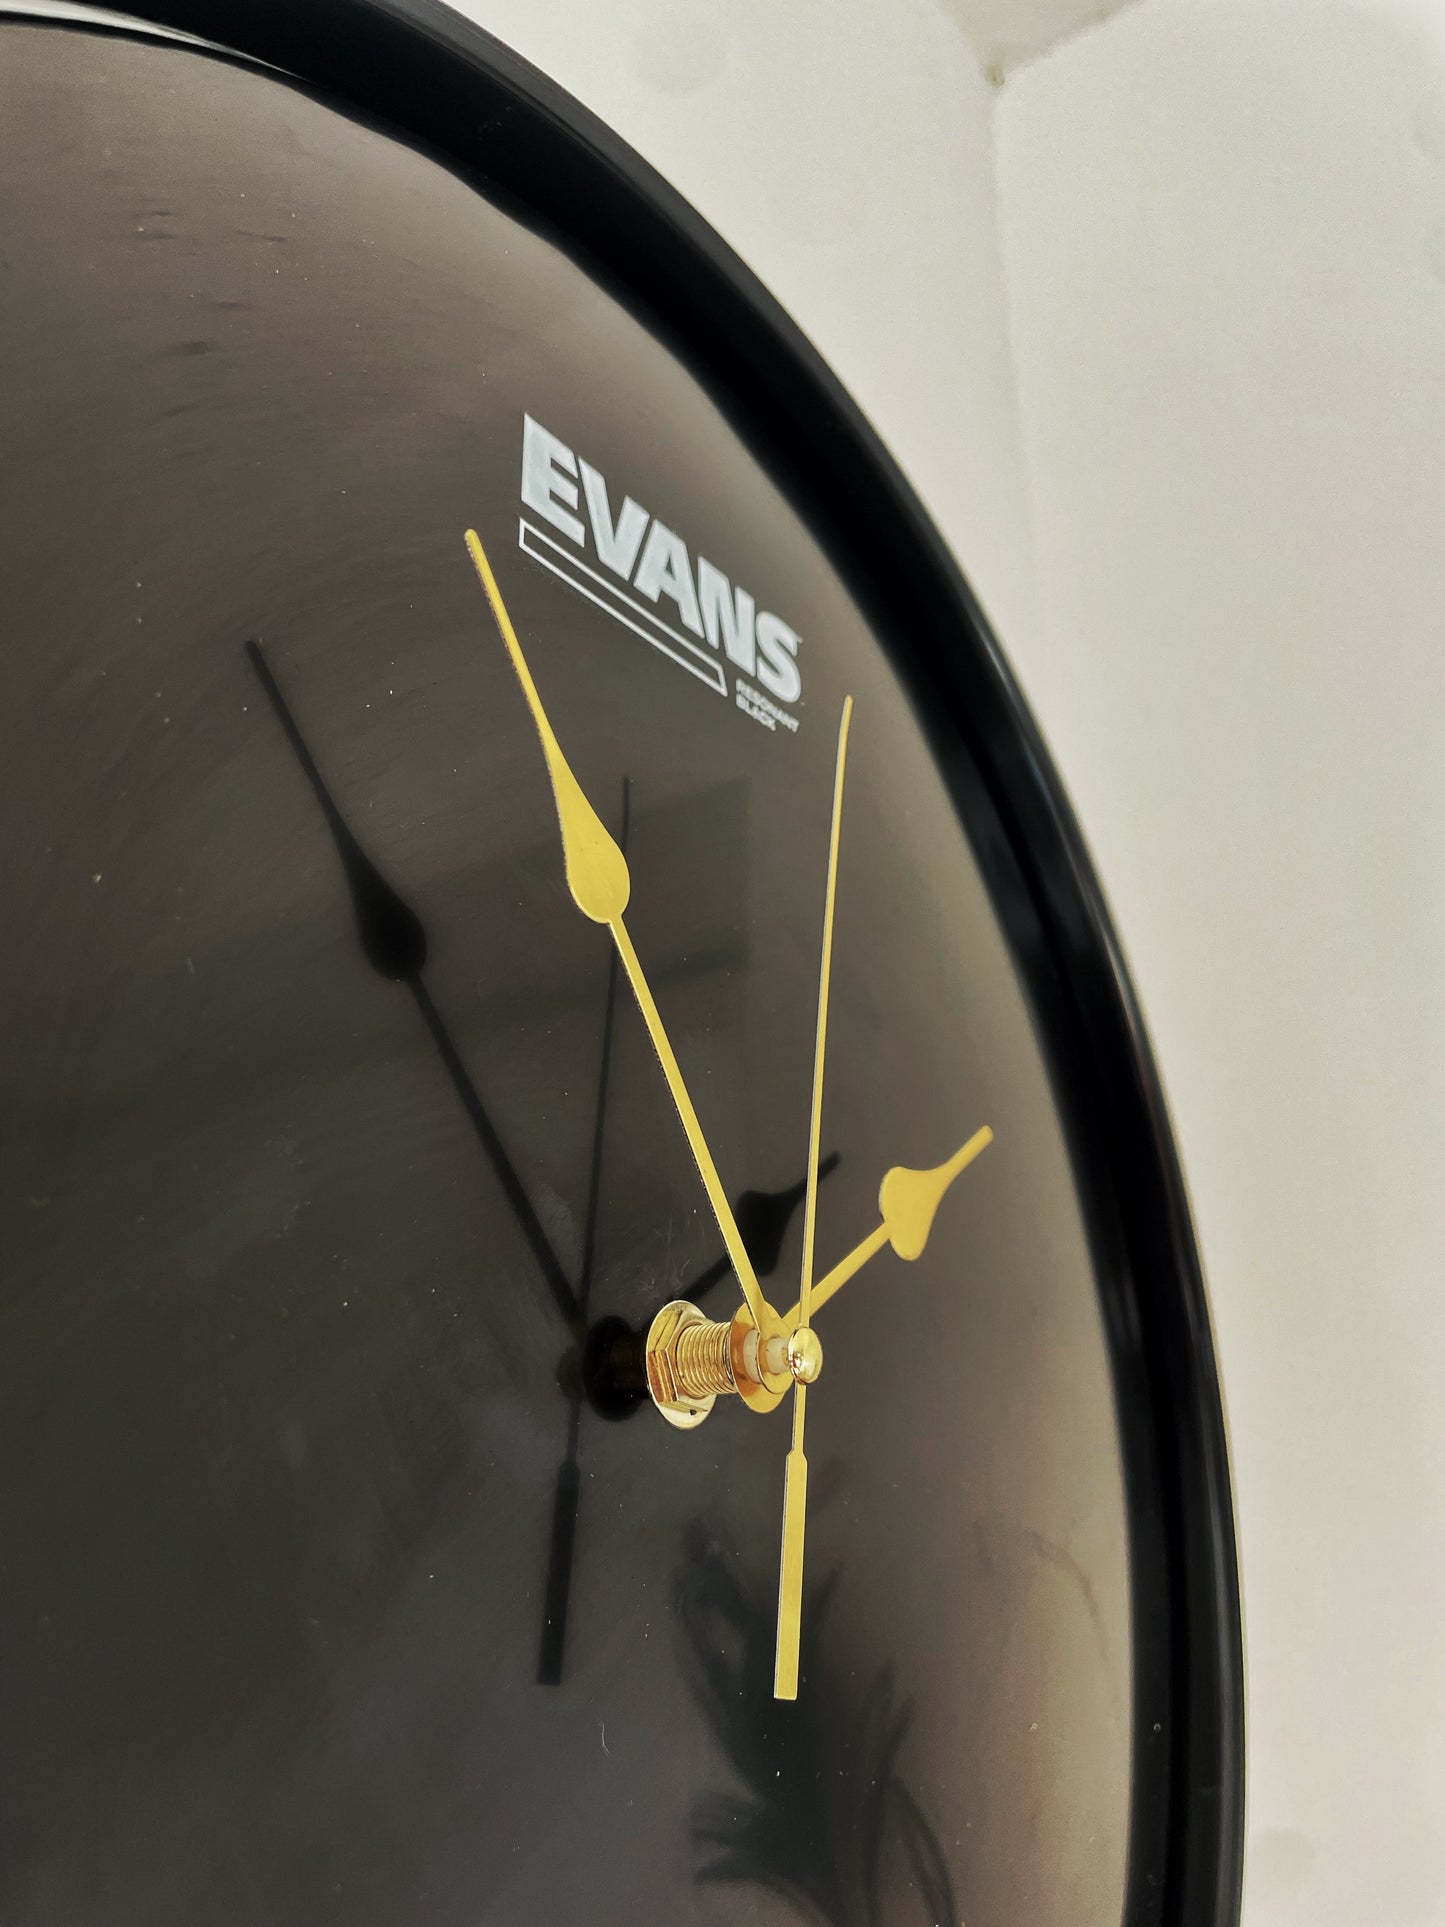 EVANS Drum Clock / Wall Mounted 12” Drum Clock / Black / Upcycled Drum / Drum Kit